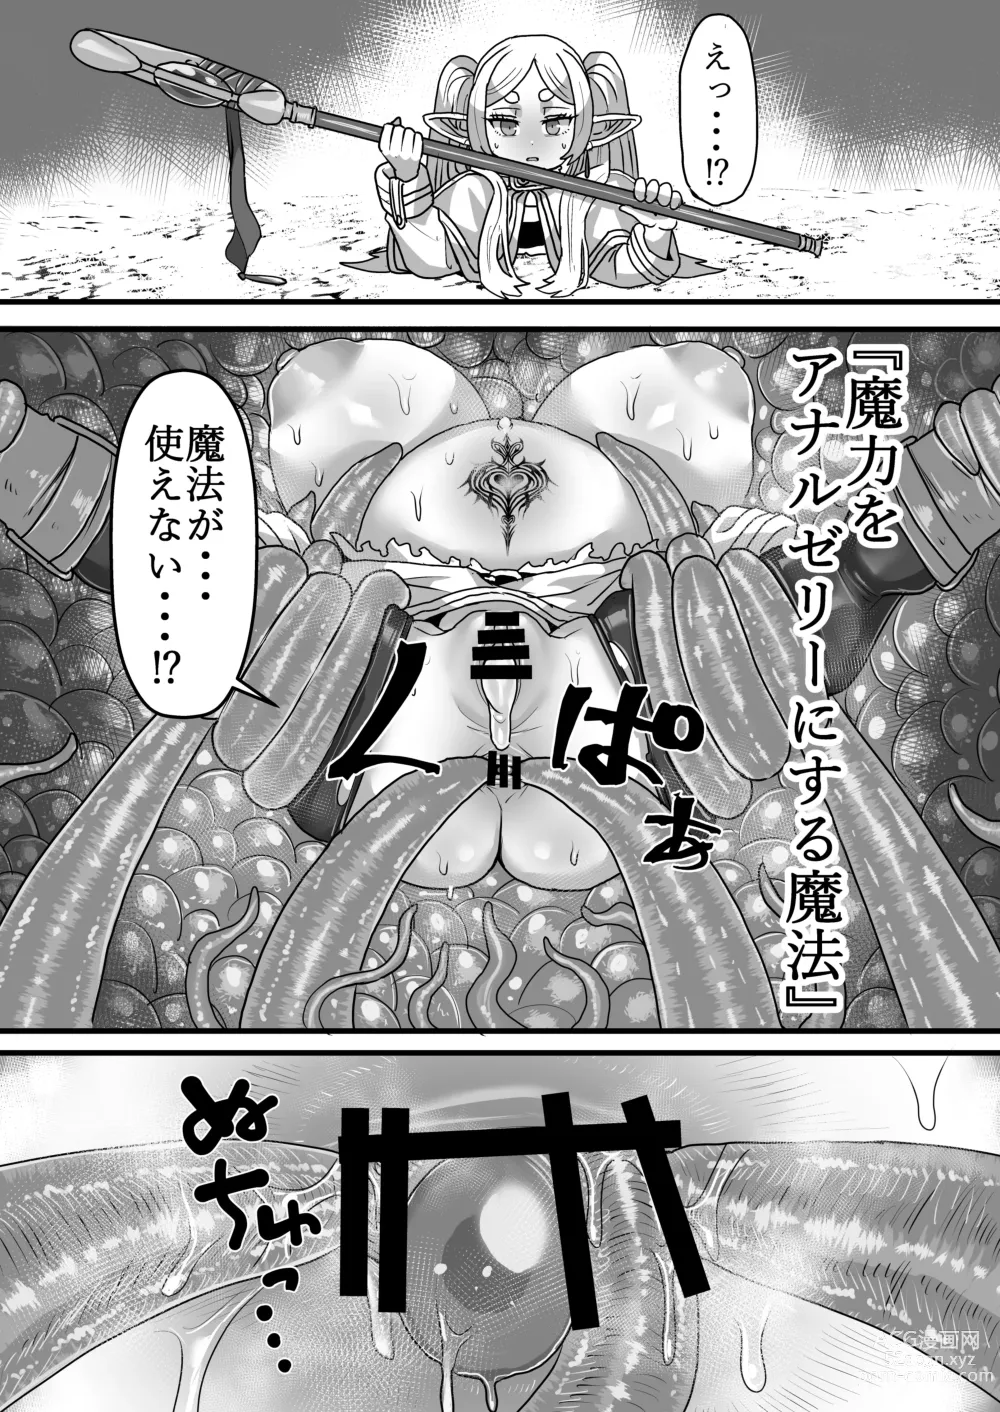 Page 21 of doujinshi Frieren to Kankaku Shadan Ana